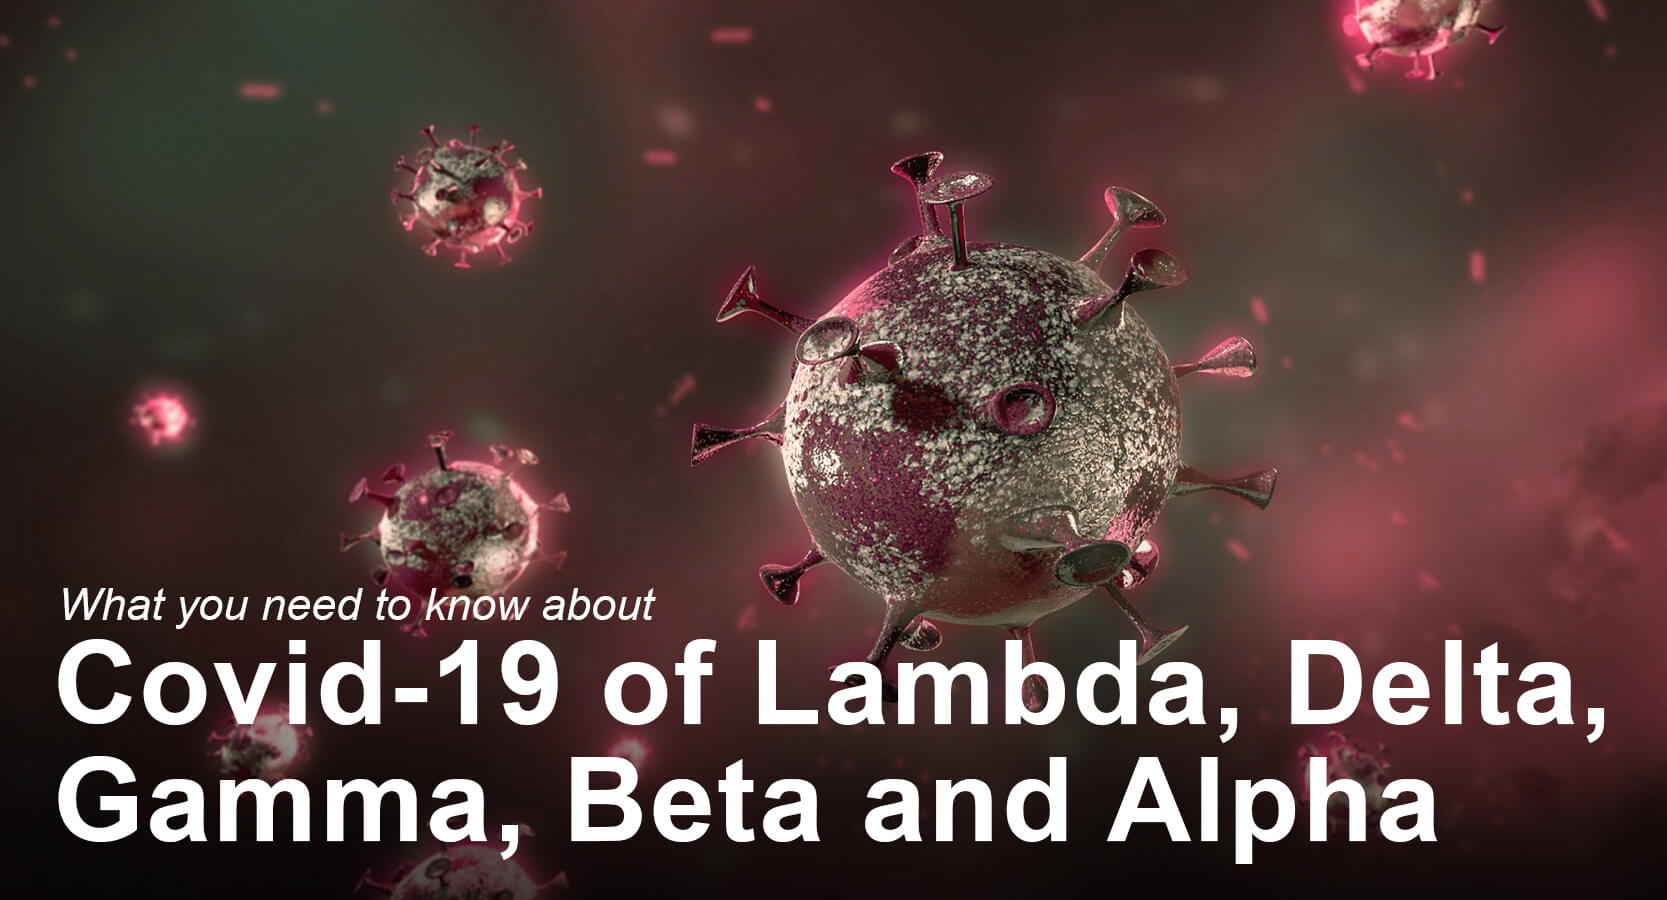 Covid-19 of Lambda, Delta, Gamma, Beta and Alpha